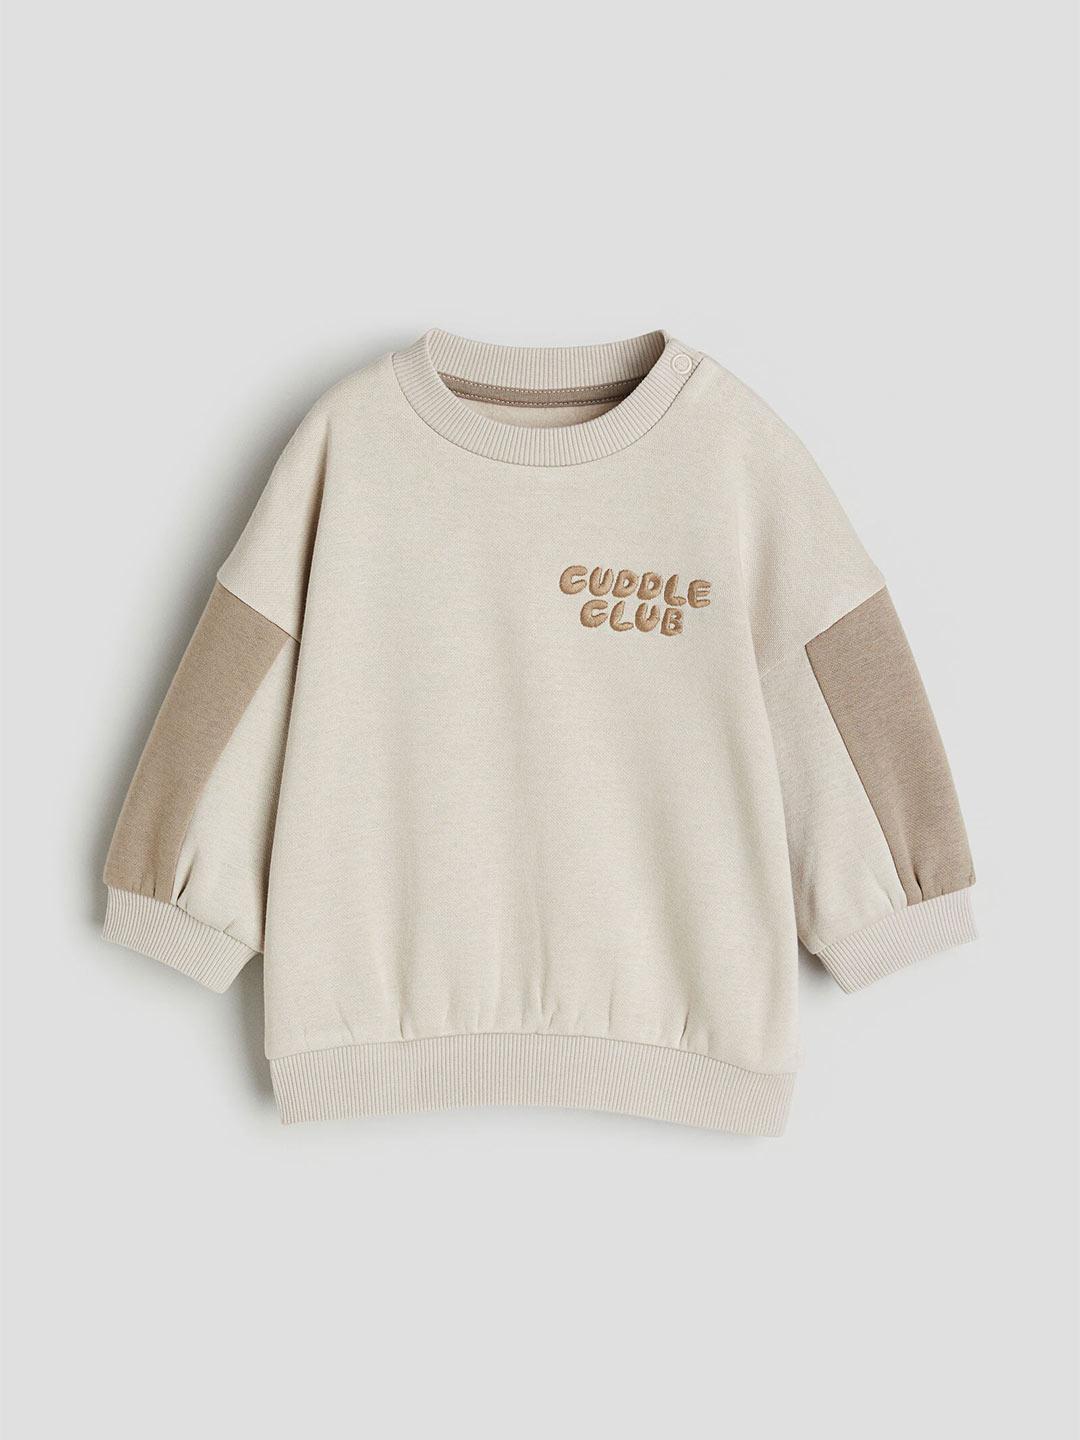 H&M Infant Boys Cotton Sweatshirt